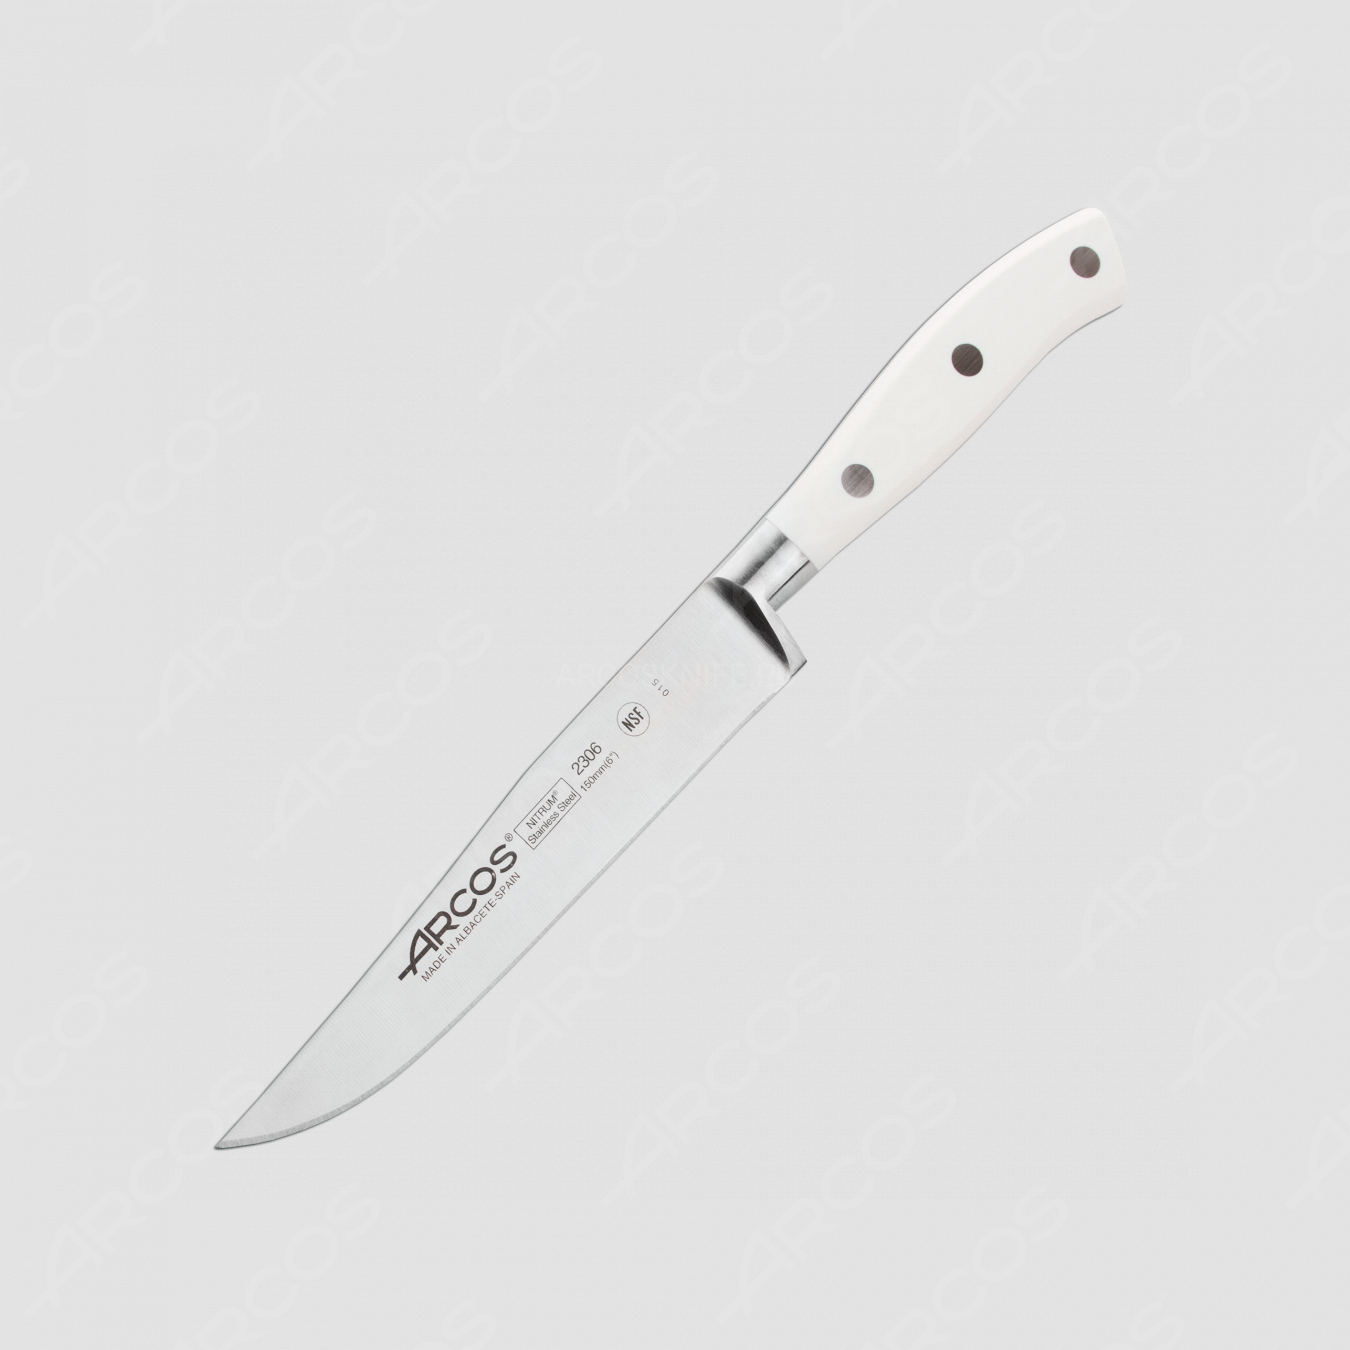 Нож кухонный универсальный 15 см, серия Riviera Blanca, ARCOS, Испания